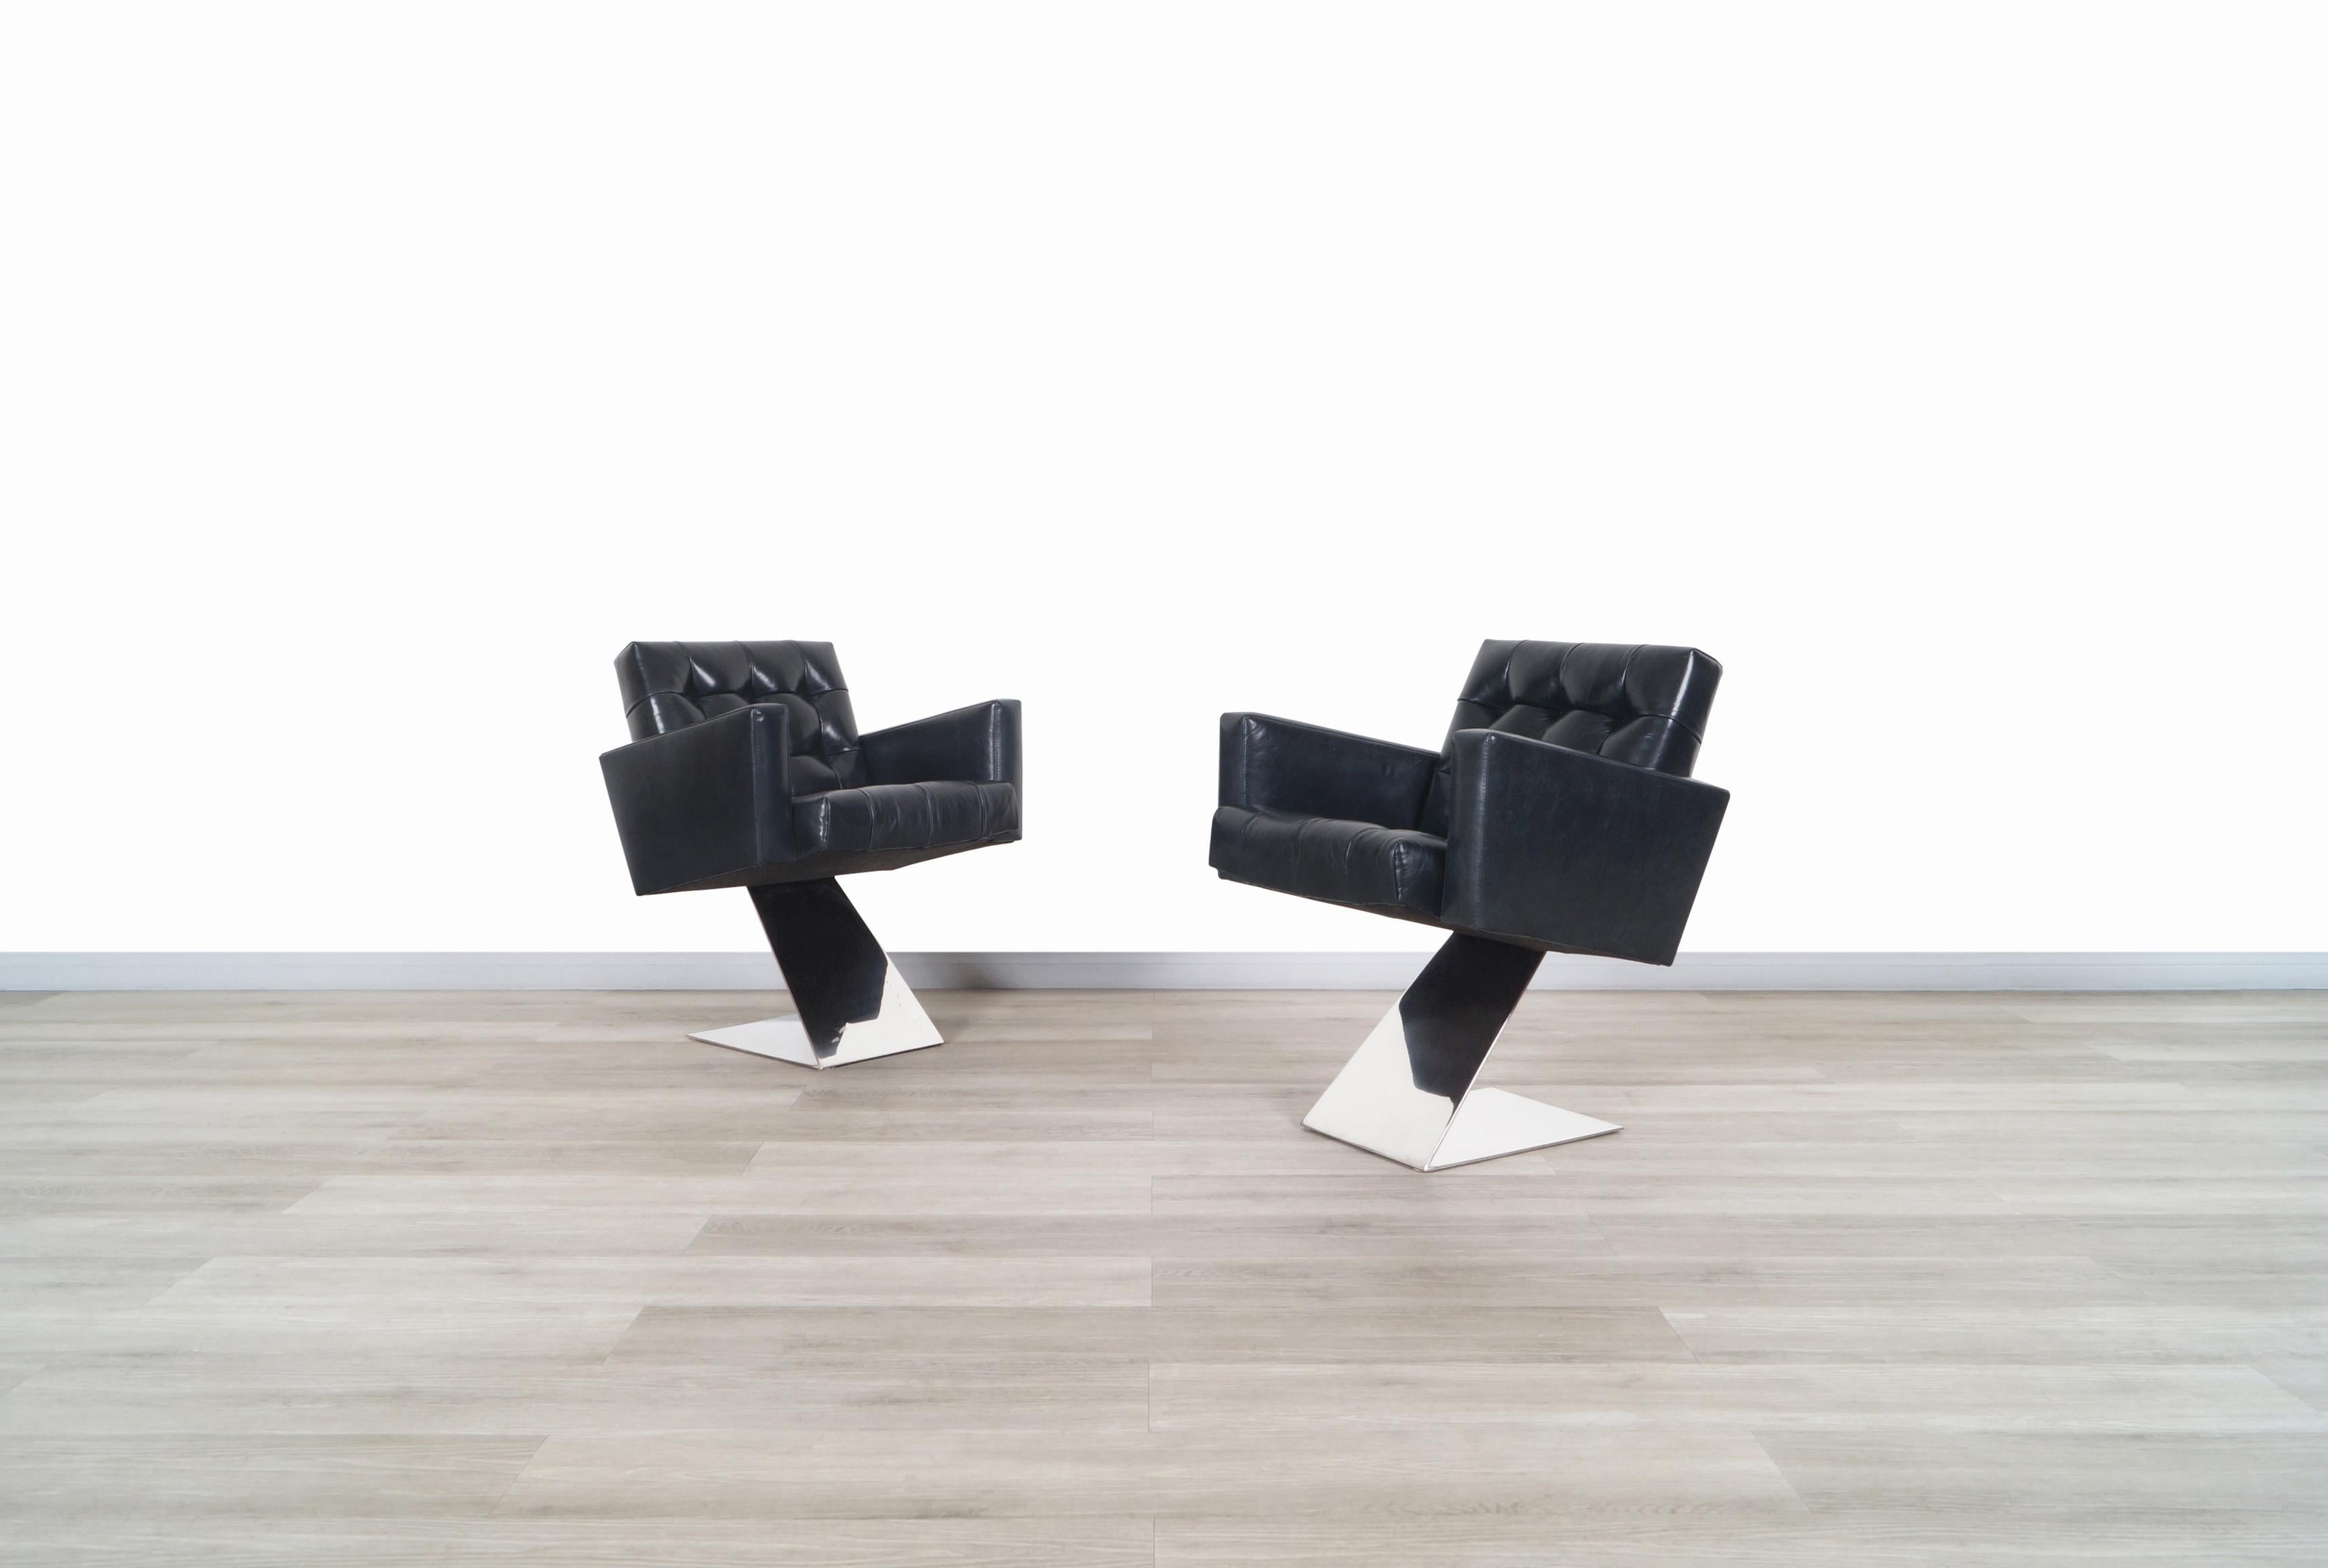 Superbes chaises longues vintage en acier inoxydable conçues par le designer emblématique Milo Baughman pour Thayer Coggin aux États-Unis, vers les années 1970. Ces chaises ont un design innovant et audacieux, compte tenu de l'année de leur